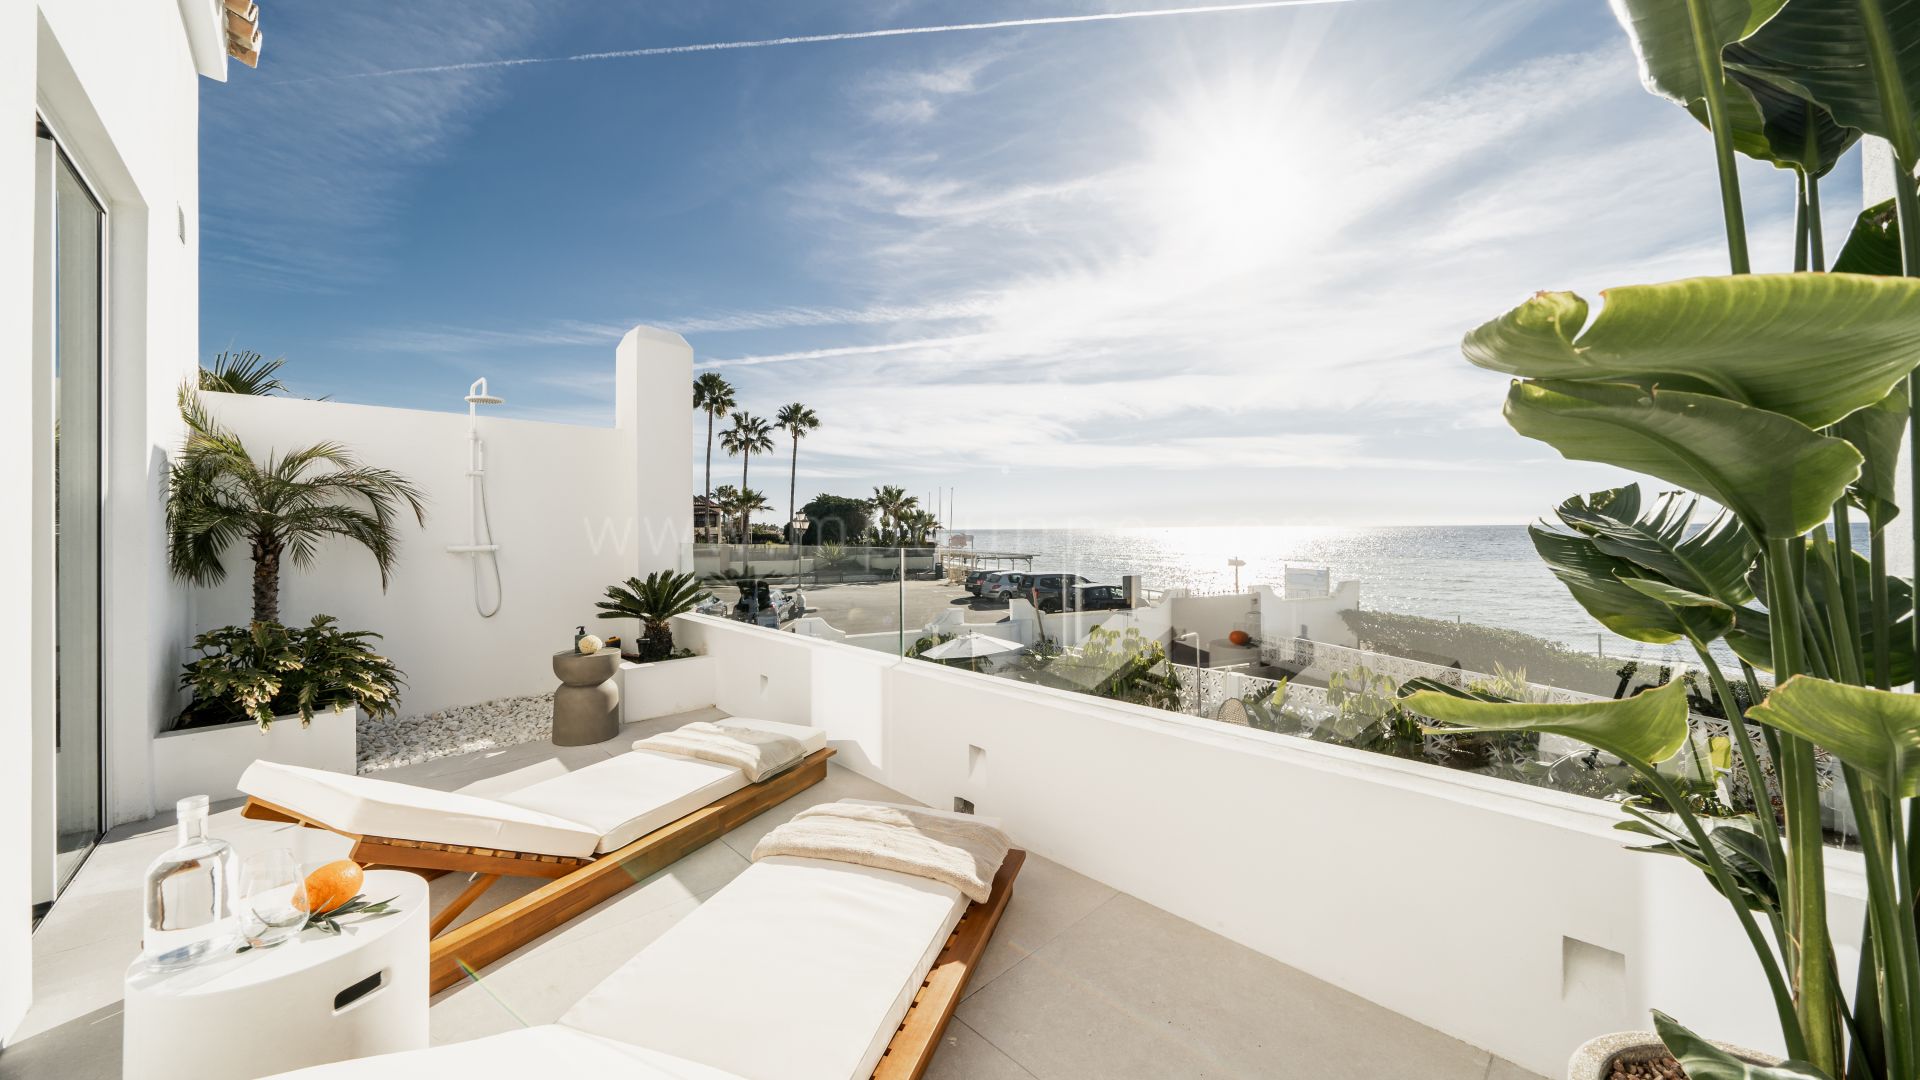 Casa adosada reformada en primera línea de playa con jardín en Marbella